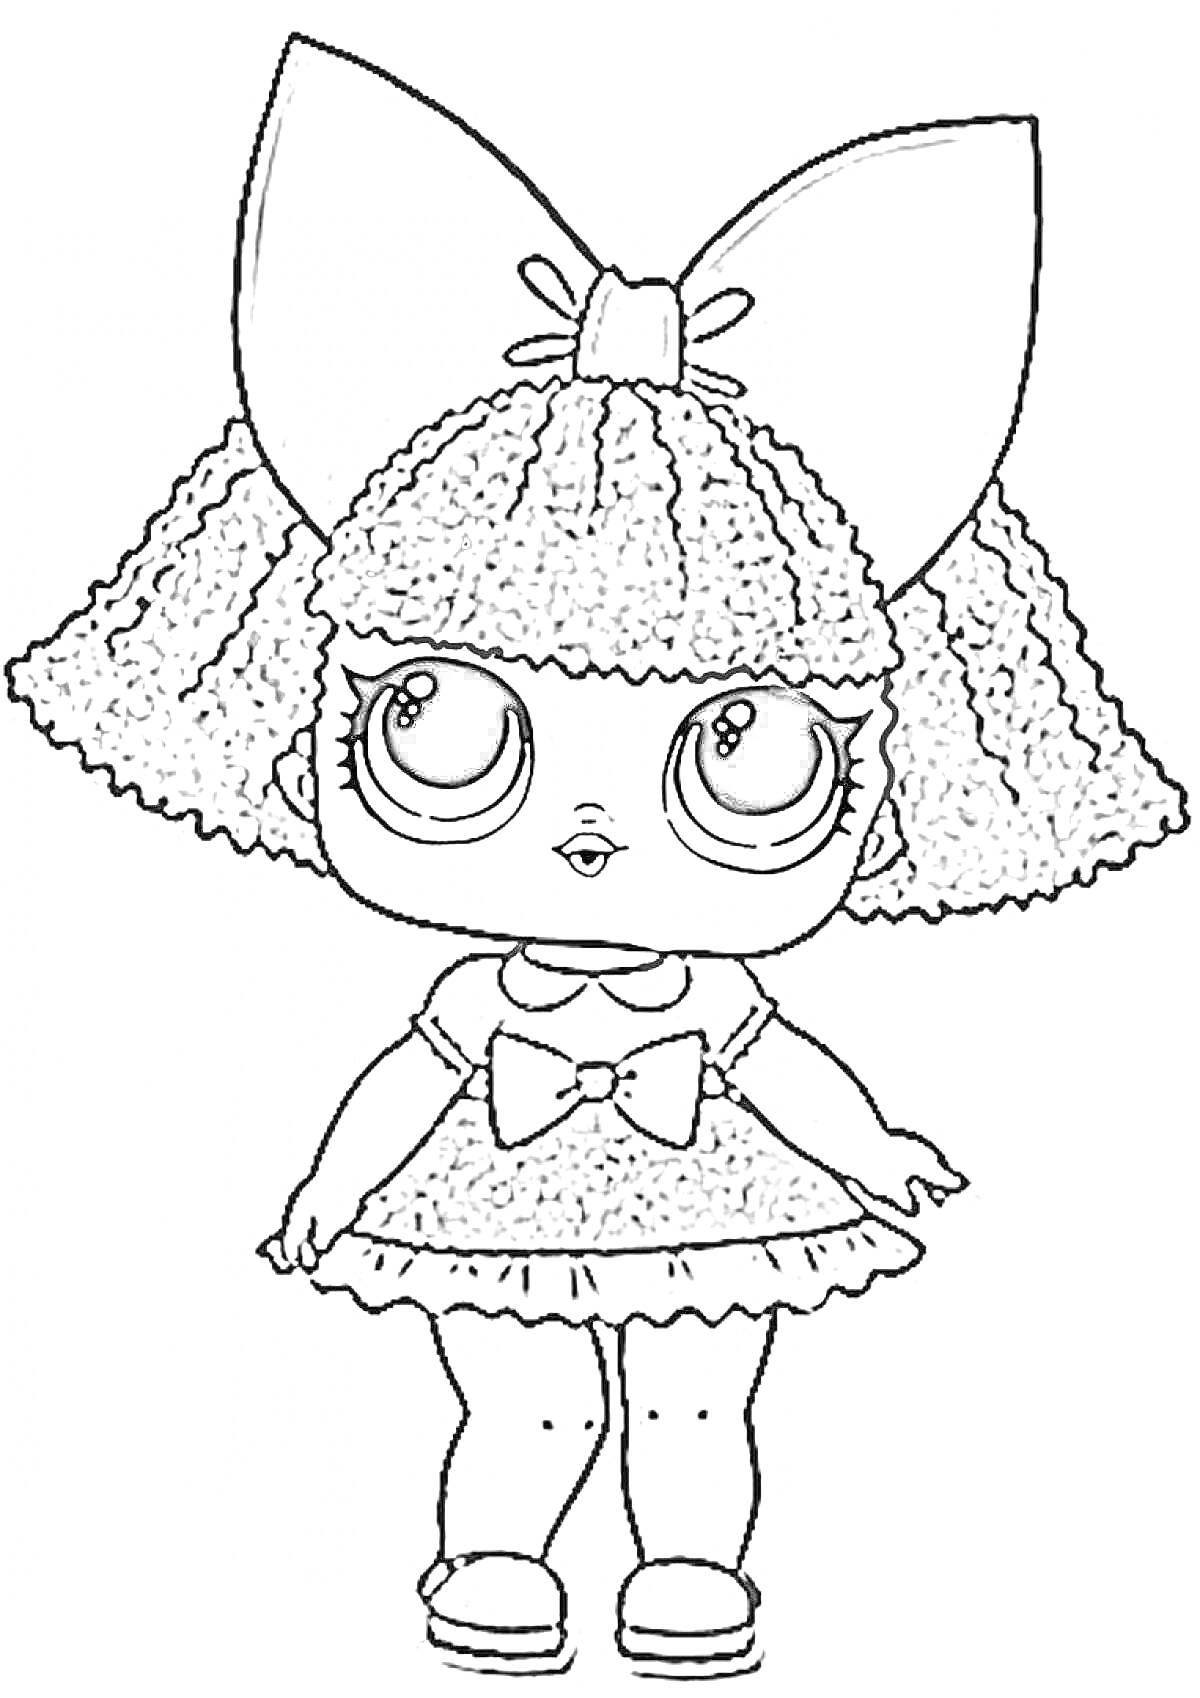 Раскраска Кукла Лол с большим бантом на голове, кудрявыми волосами и платьем с бантом